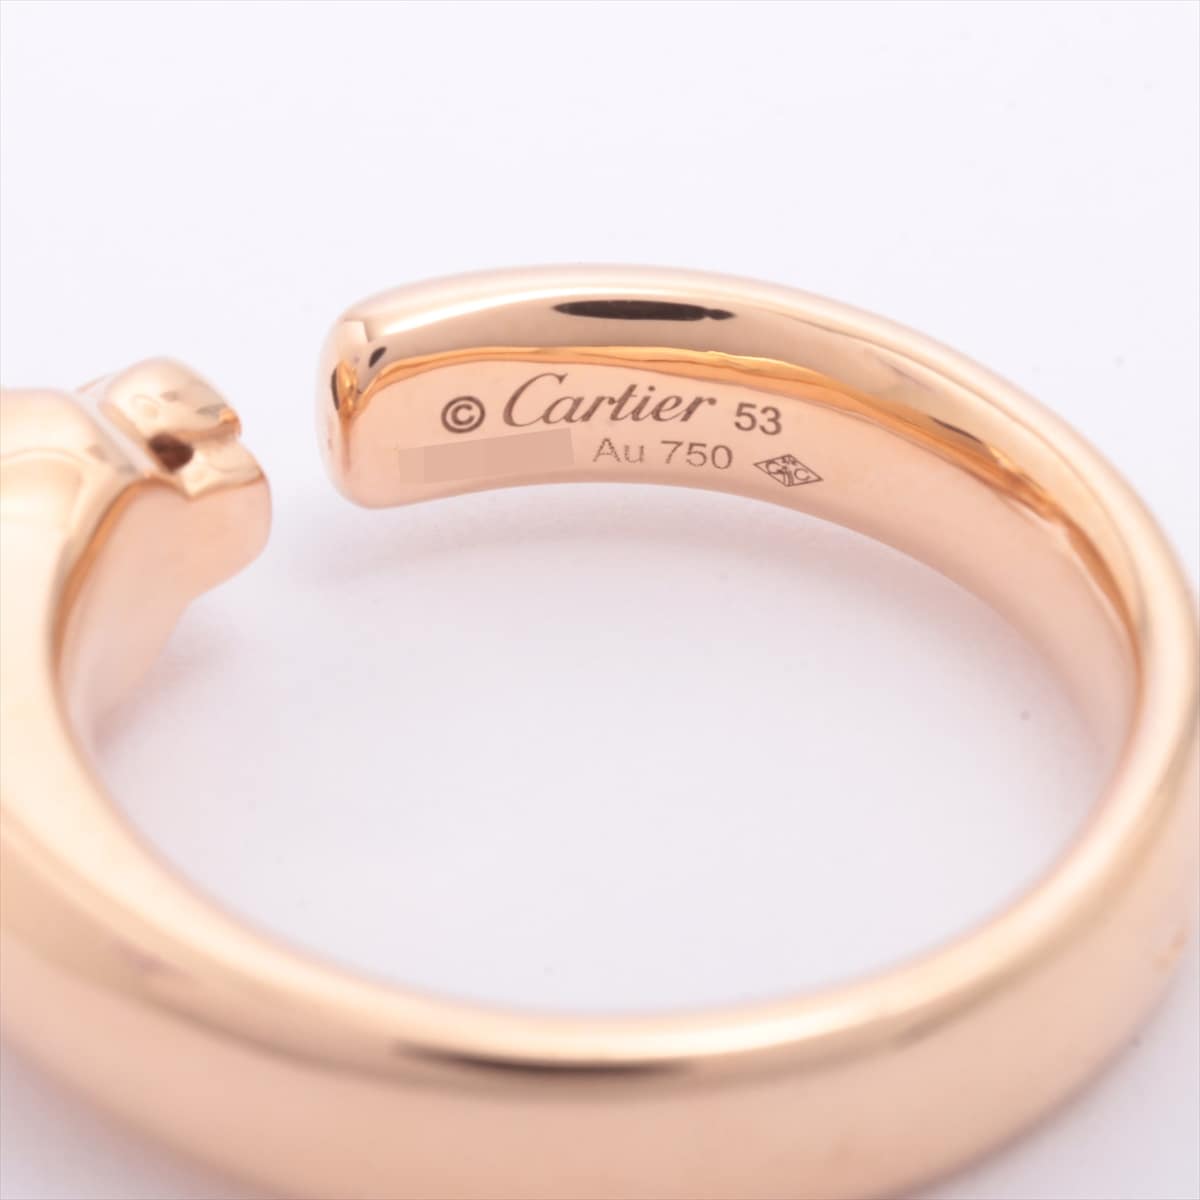 Cartier Panthère Doo Cartier Garnet Onyx rings 750(PG) 10.4g 53